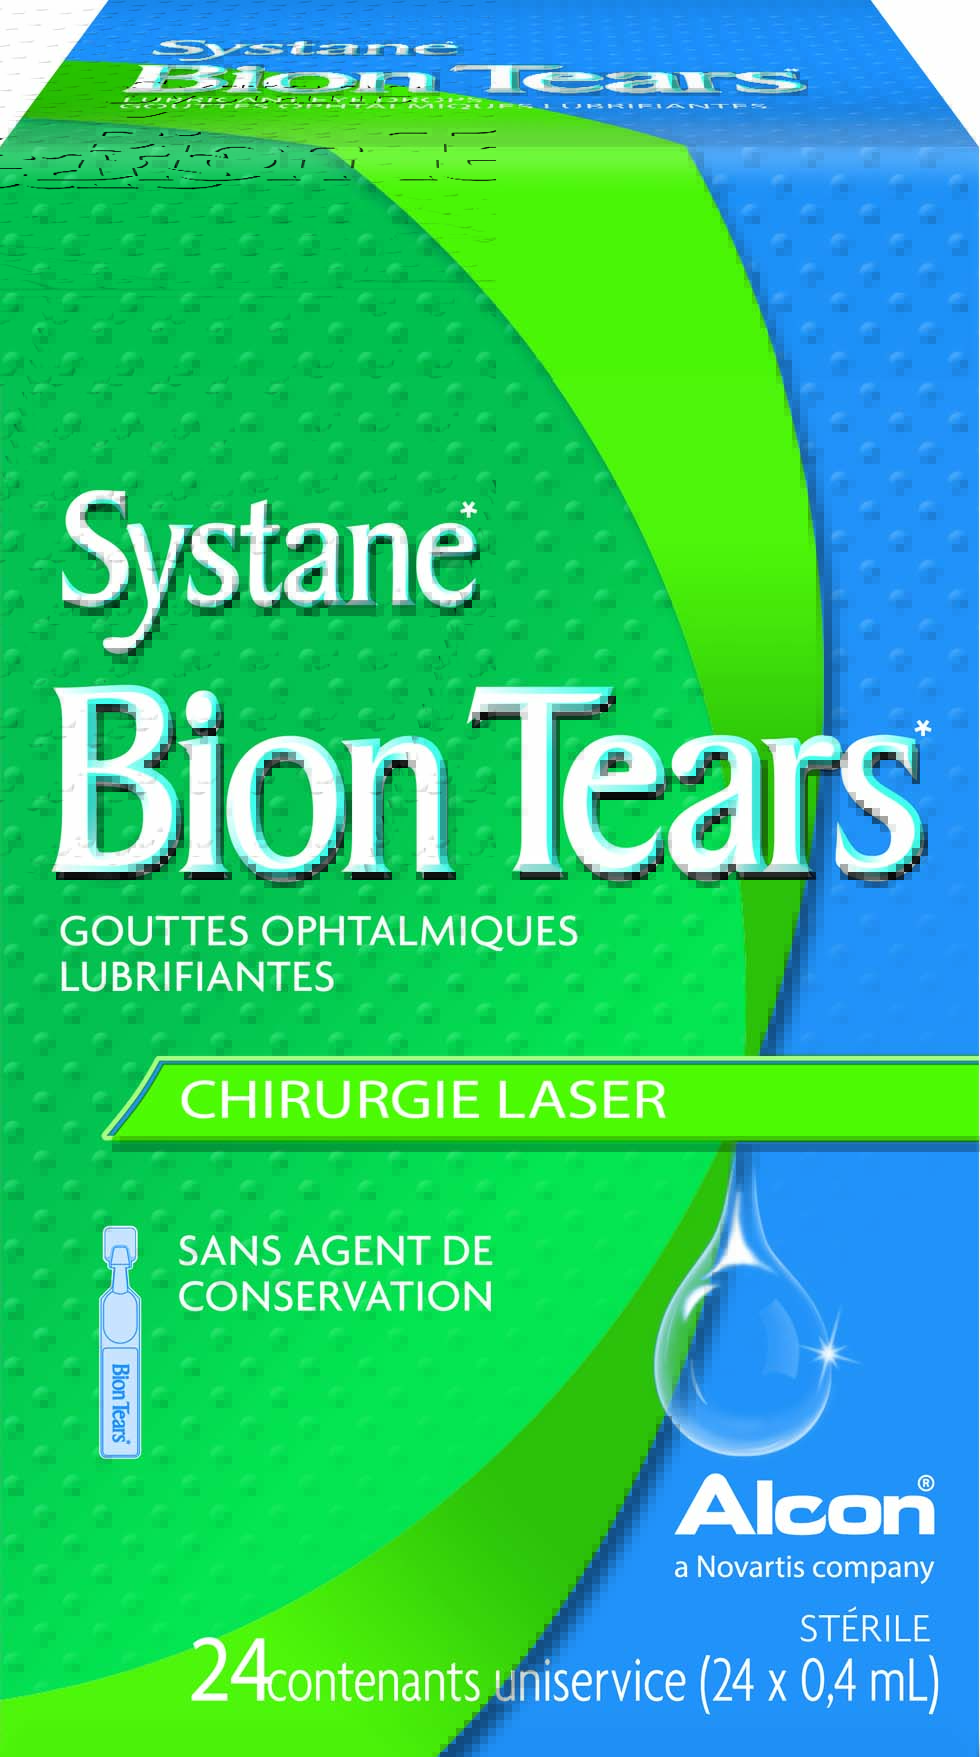 Gouttes oculaires lubrifiantes Systane Bion Tears contre la sécheresse oculaire